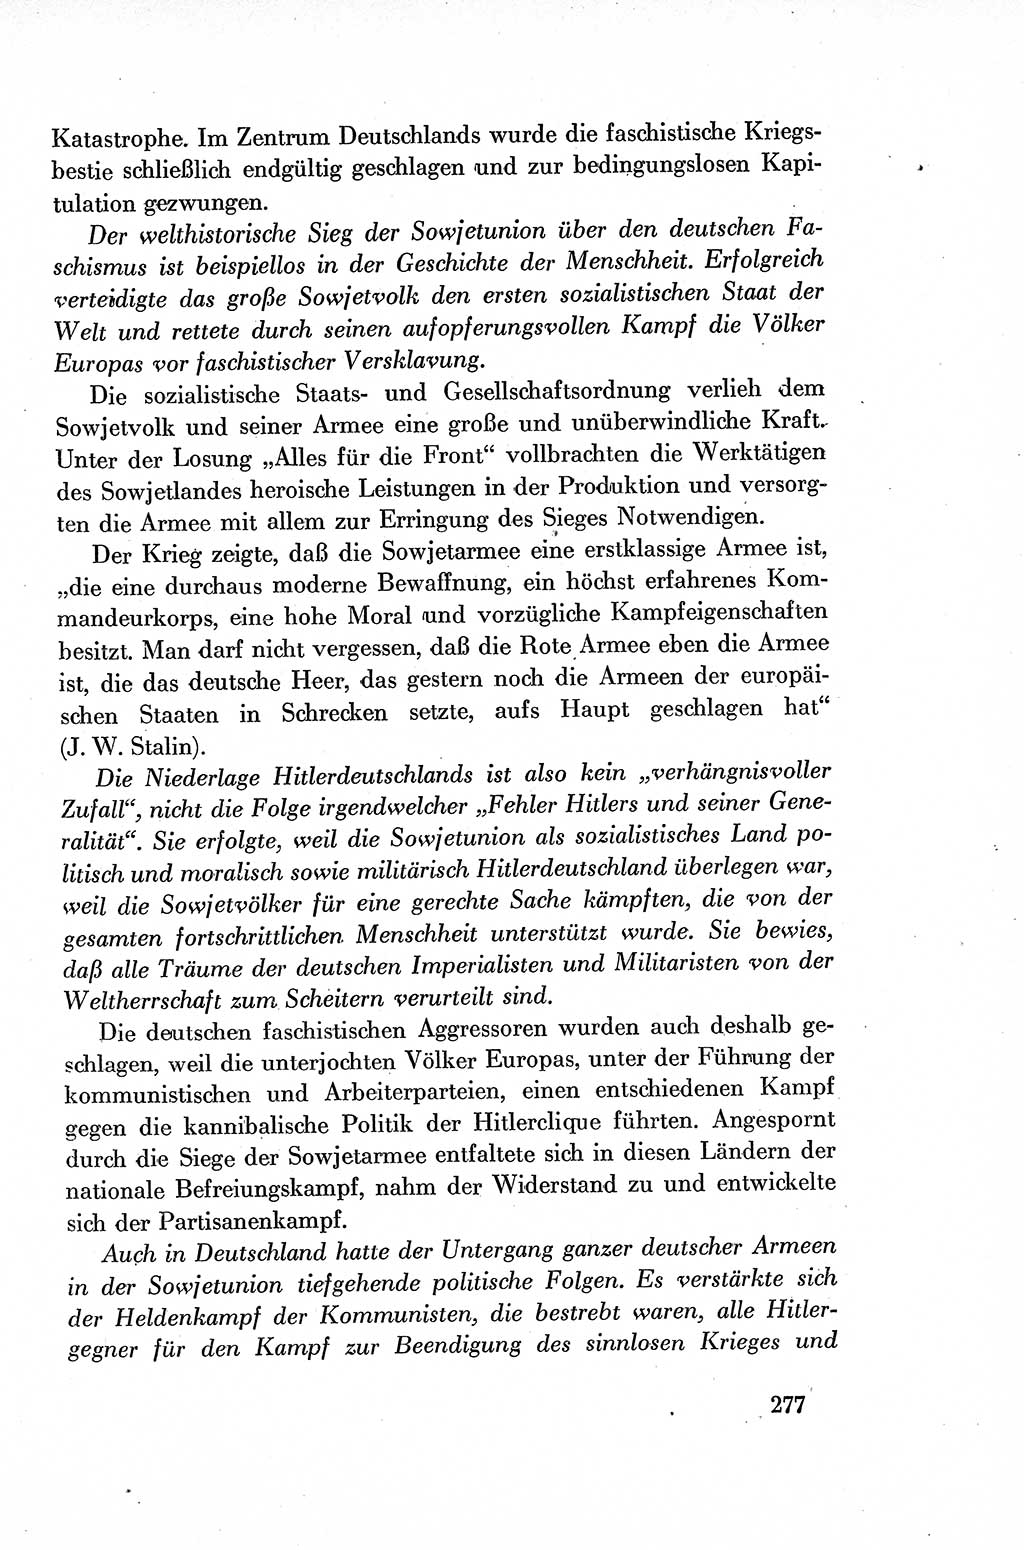 Dokumente der Sozialistischen Einheitspartei Deutschlands (SED) [Deutsche Demokratische Republik (DDR)] 1954-1955, Seite 277 (Dok. SED DDR 1954-1955, S. 277)